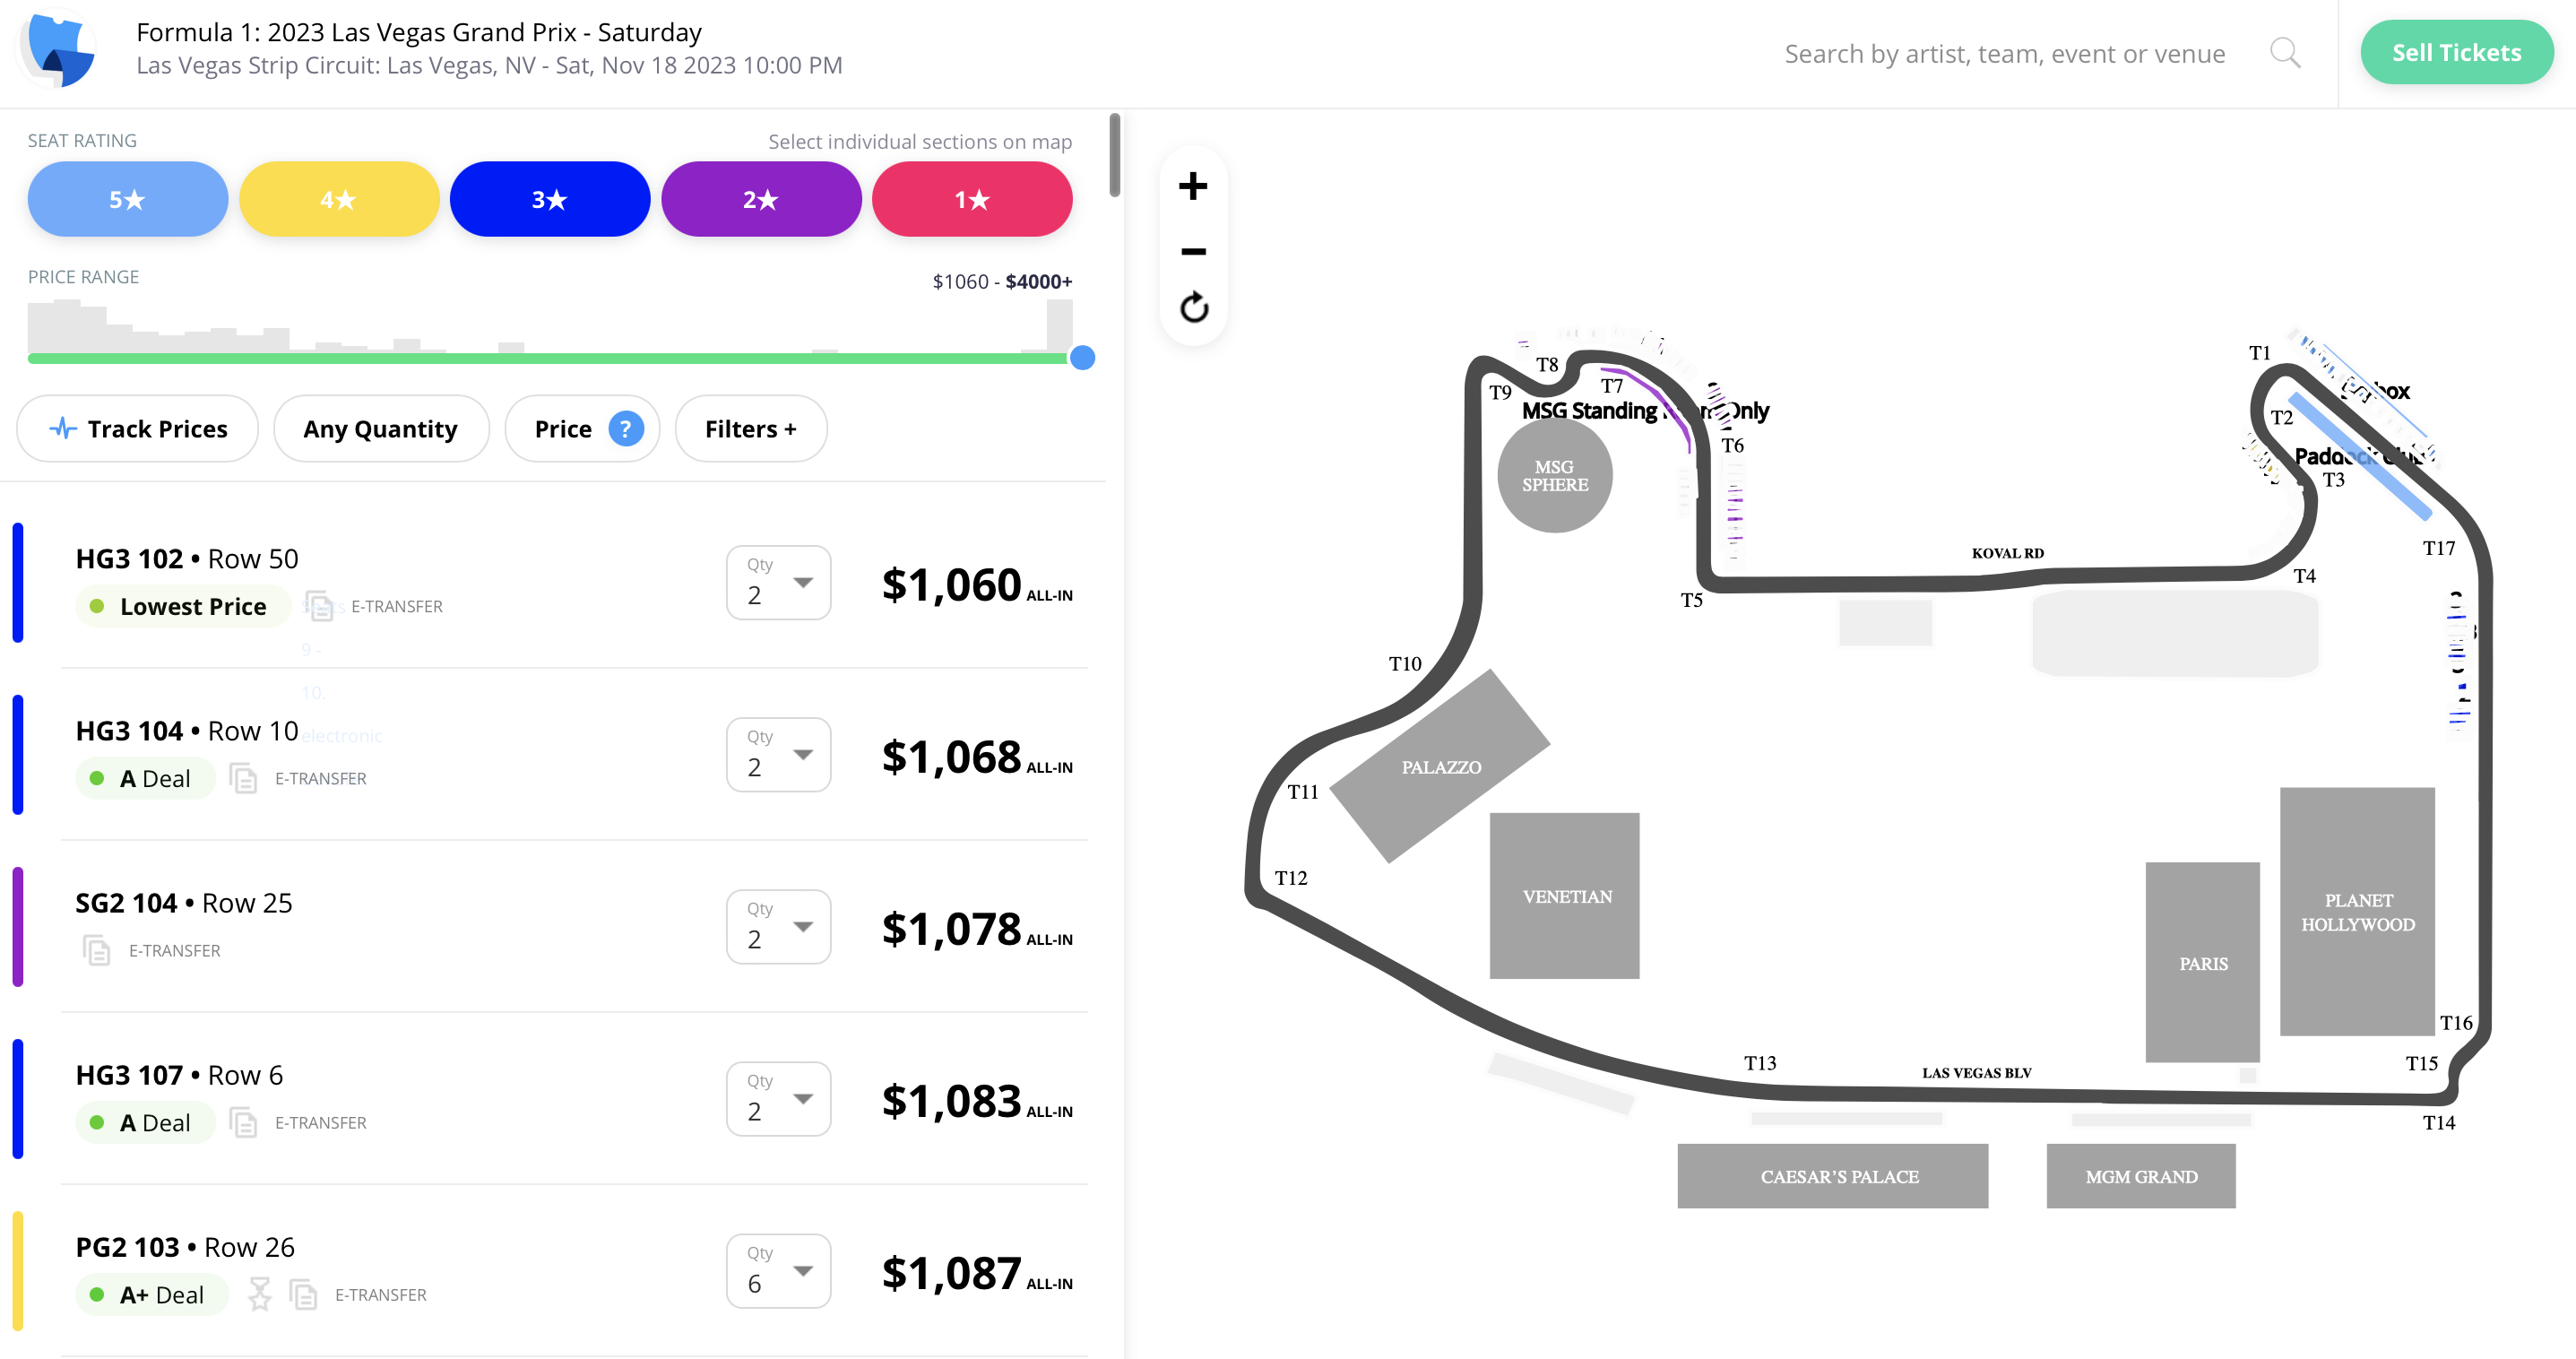 El precio de las entradas para un sólo día en el Gran Premio de Las Vegas